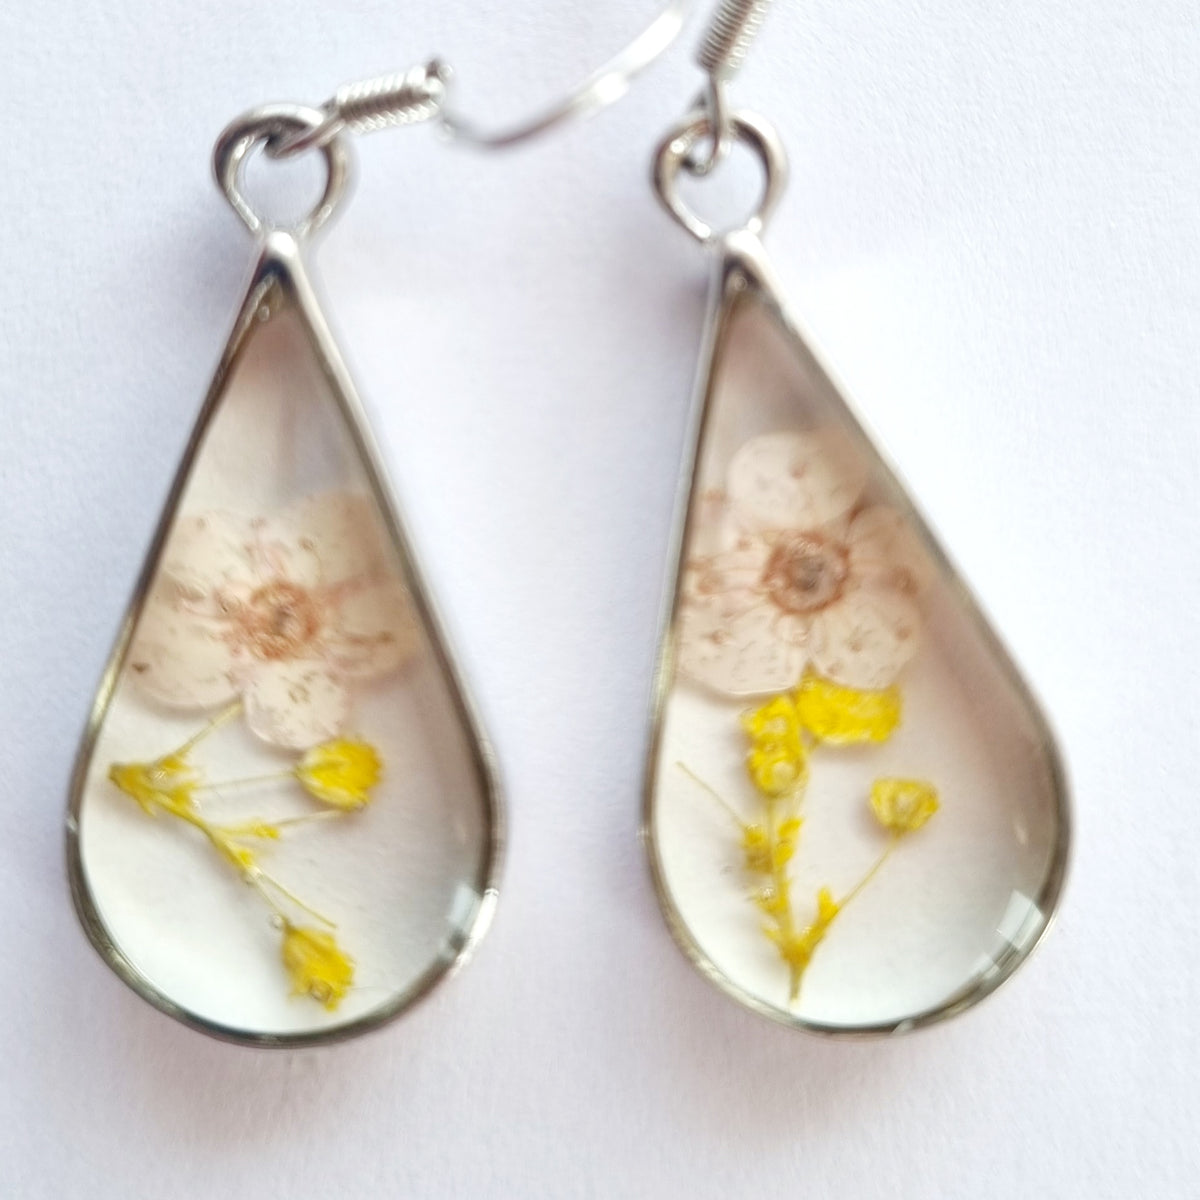 Yndige øreringe med tørrede blomster - Hårpynt med blomster og perler til bryllup, konfirmation og fest